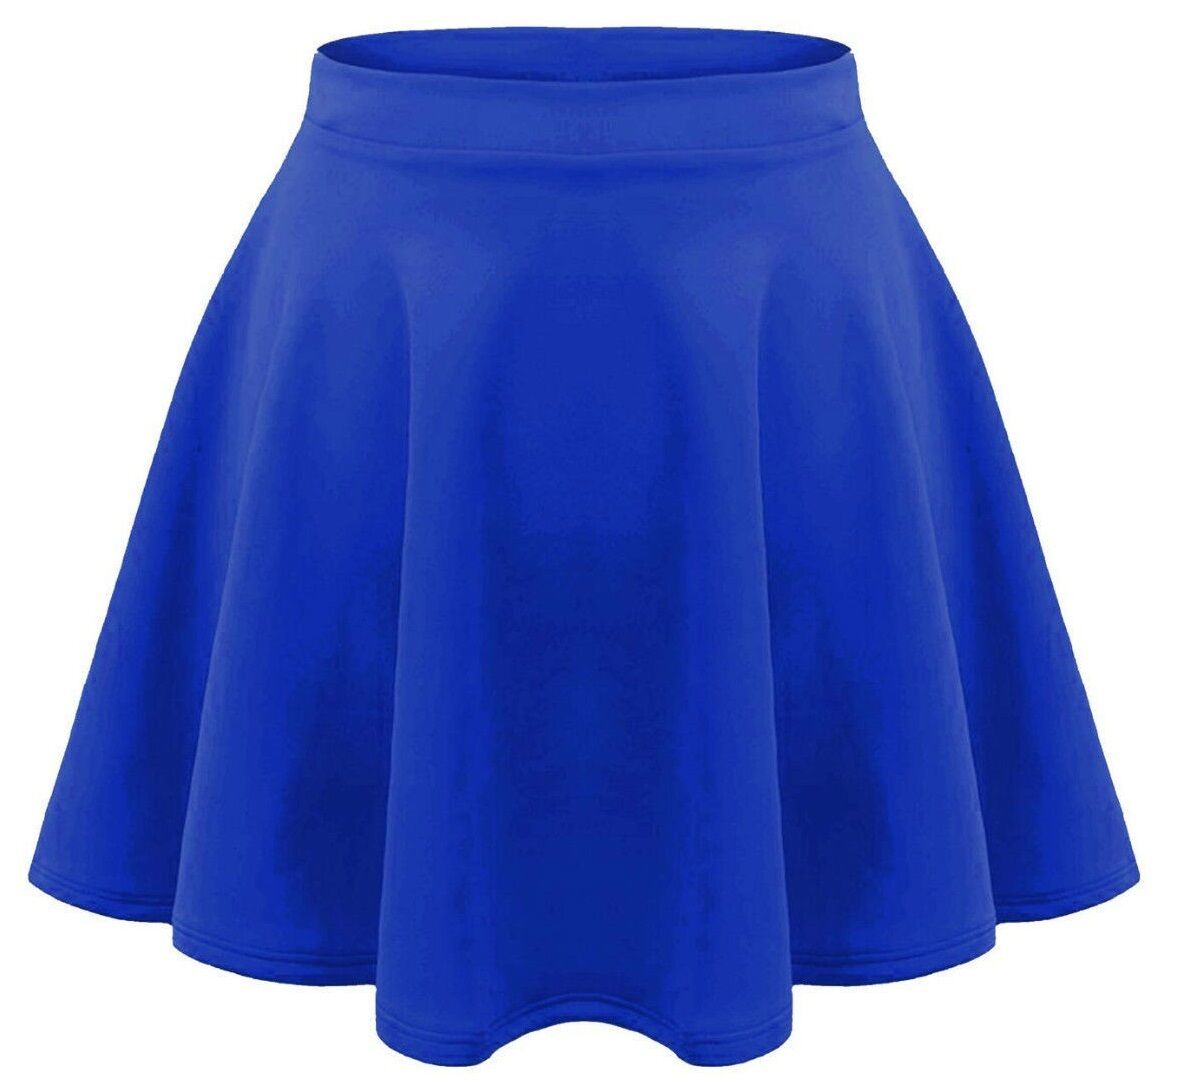 Girls Plain Royal Blue Skater Skirt.